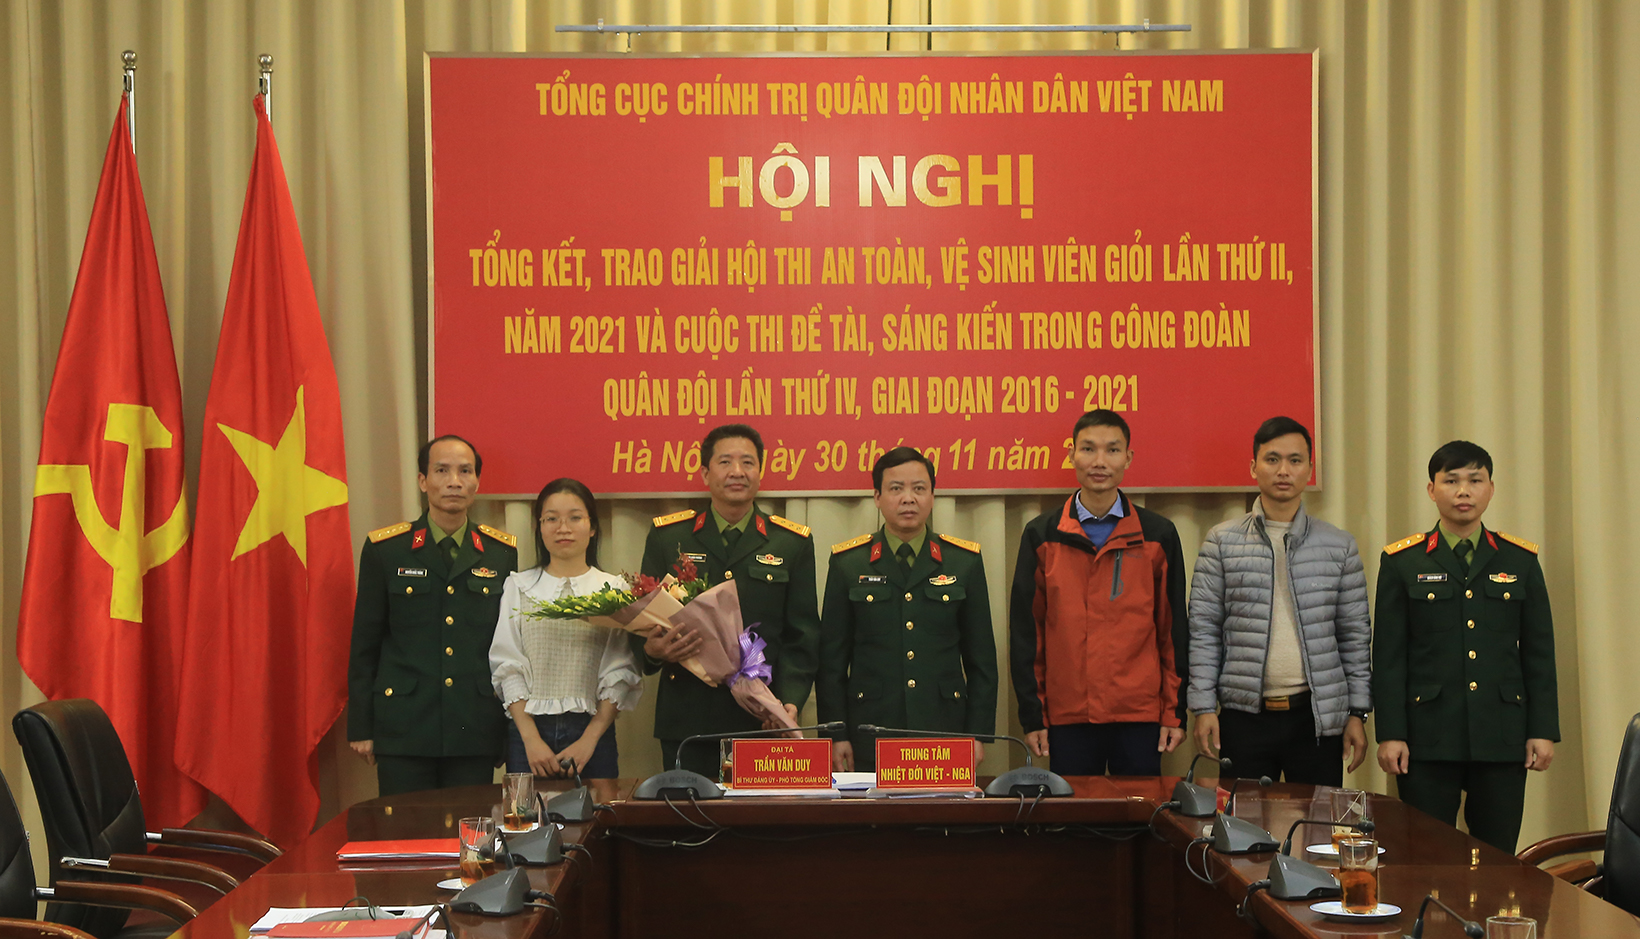 Trung tâm Nhiệt đới Việt - Nga đạt kết quả cao  Cuộc thi Đề tài, sáng kiến trong Công đoàn Quân đội